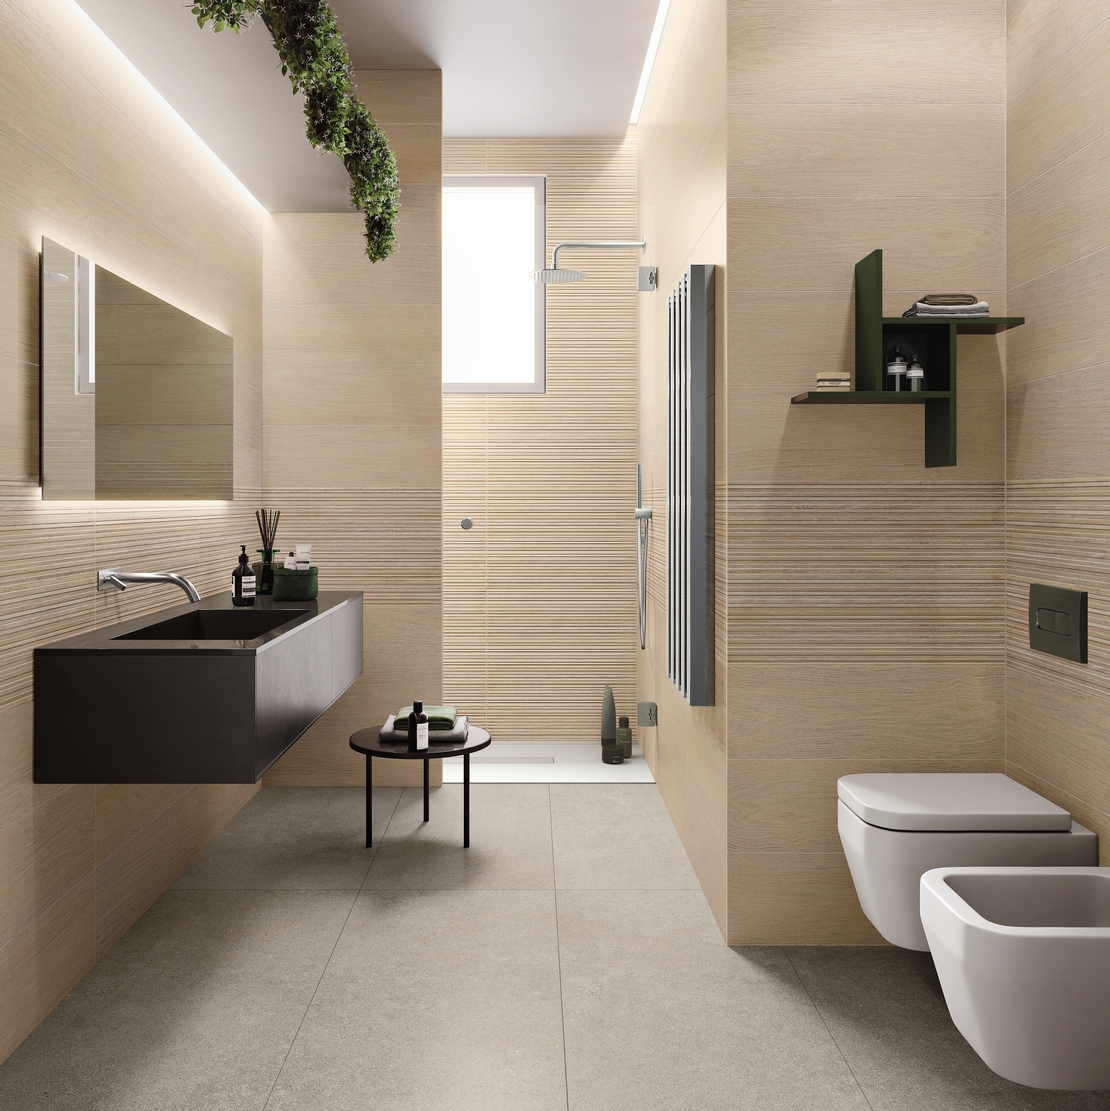 Modernes Badezimmer, lange,schmale Badewanne, mit Dusche. Holz und Zementoptik in Beige und Grau - Inspirationen Iperceramica